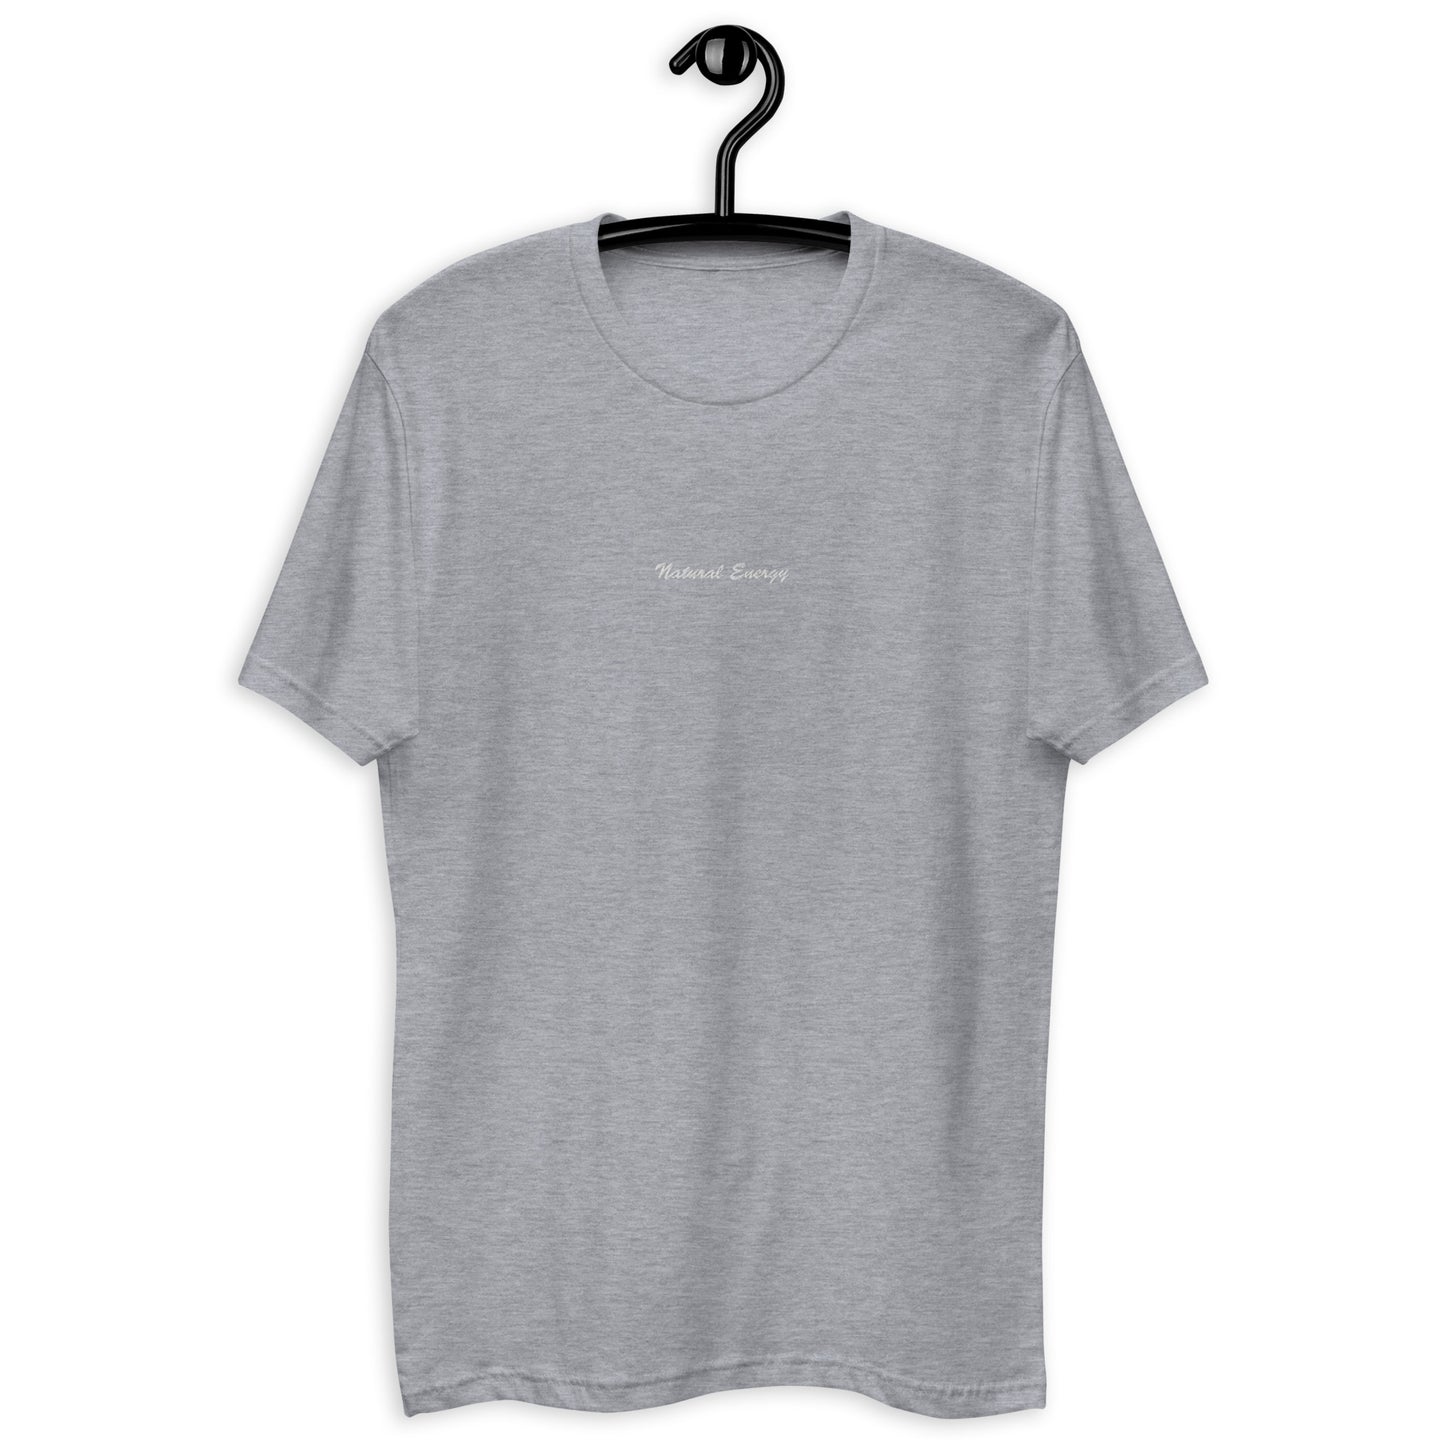 Cursive Short Sleeve T-shirt